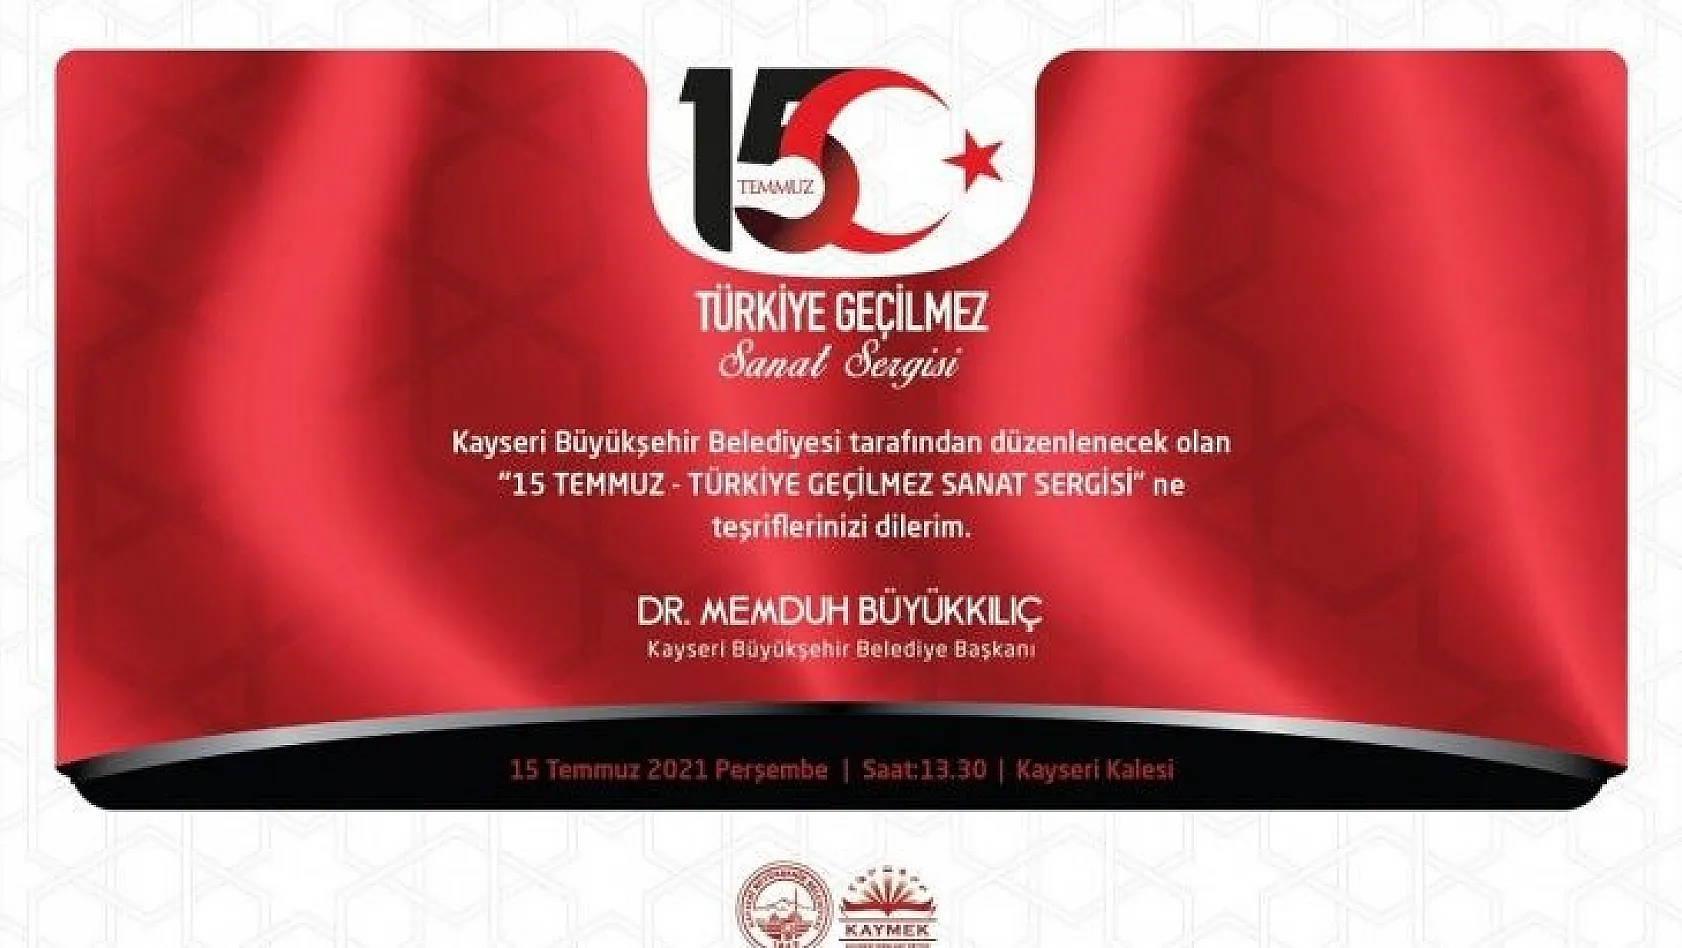 Büyükşehir'den '15 Temmuz Türkiye Geçilme' Sanat Sergisi